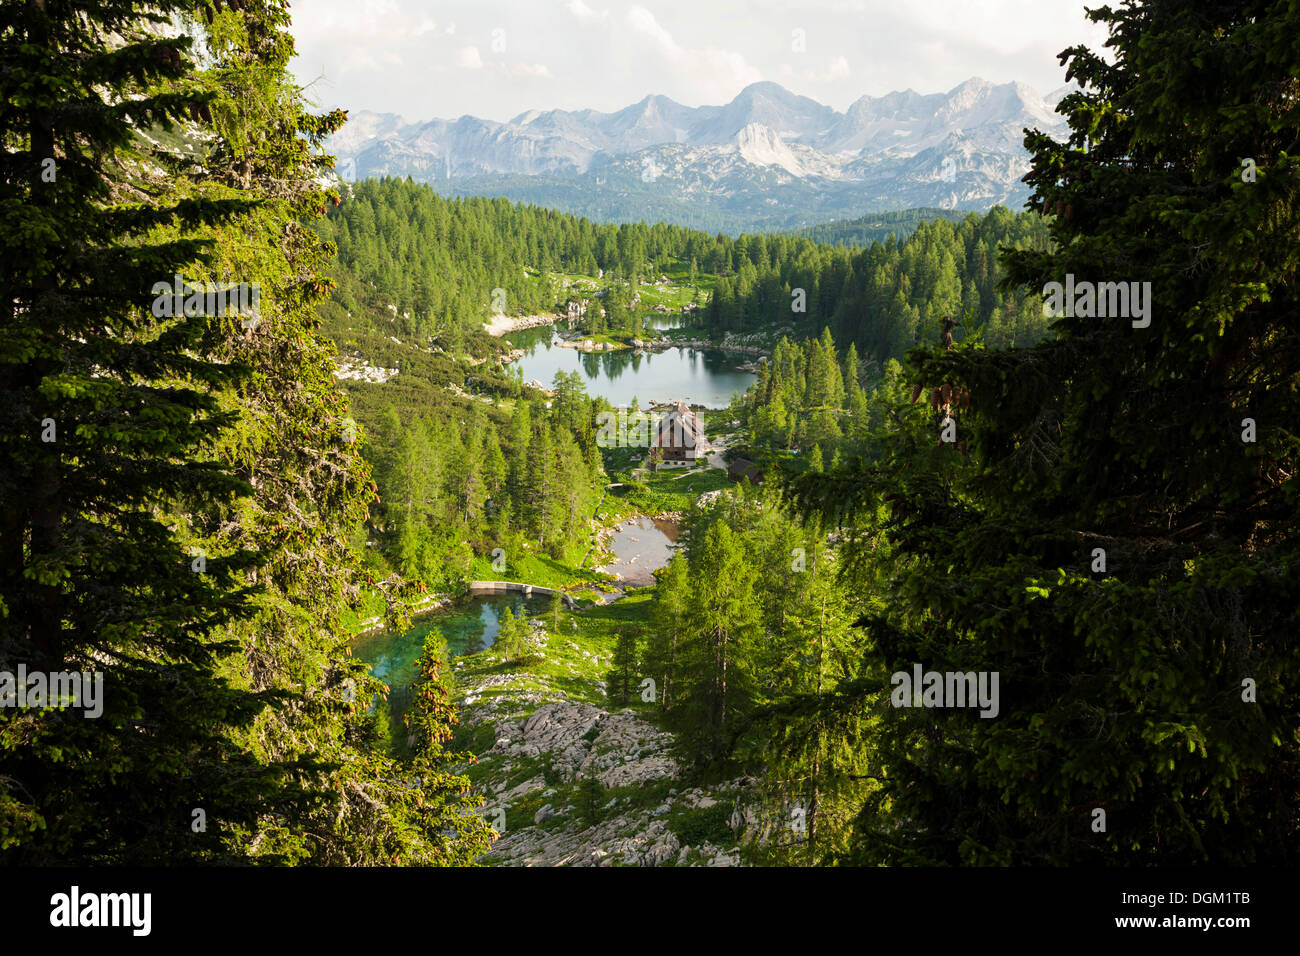 Koca pri Triglavskih jezerih, Seven Lakes Hut, Triglav National Park, Slovenia, Europe Stock Photo